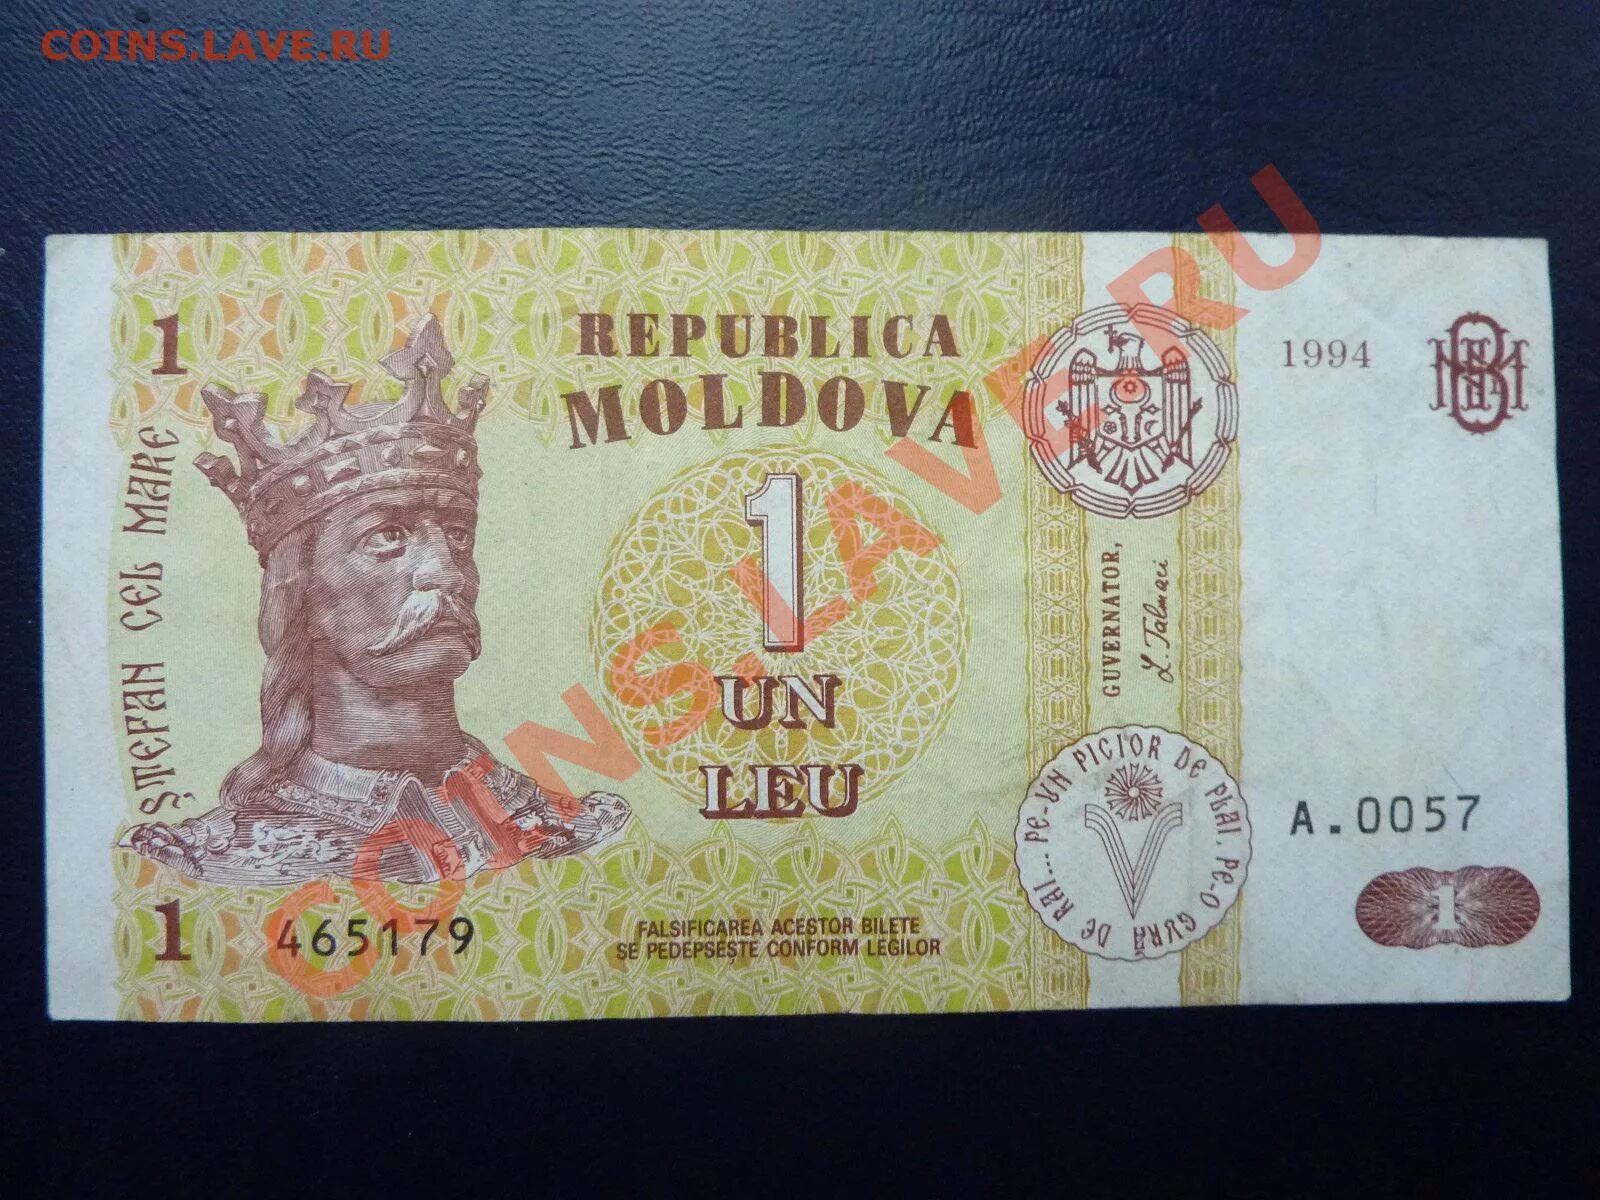 Рубль в лей на сегодня молдавии. 1 Молдавский лей.